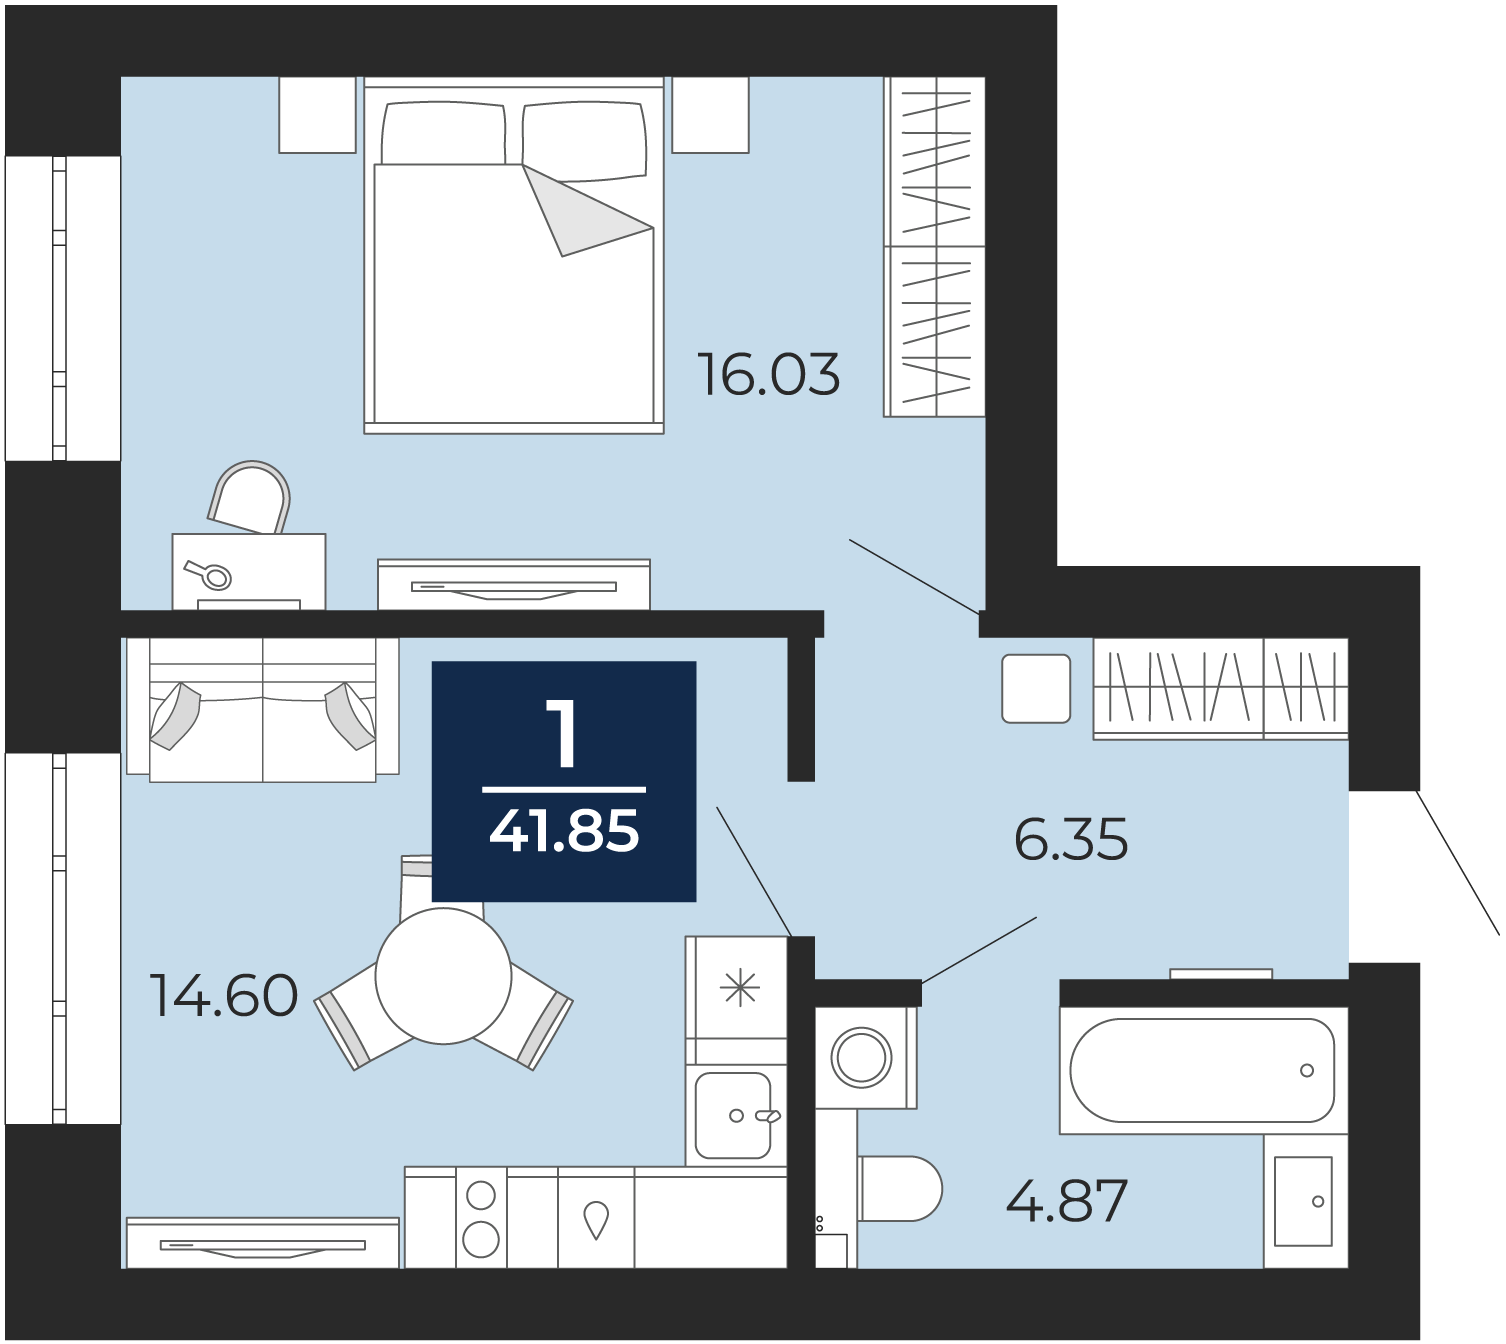 Квартира № 78, 1-комнатная, 41.85 кв. м, 6 этаж